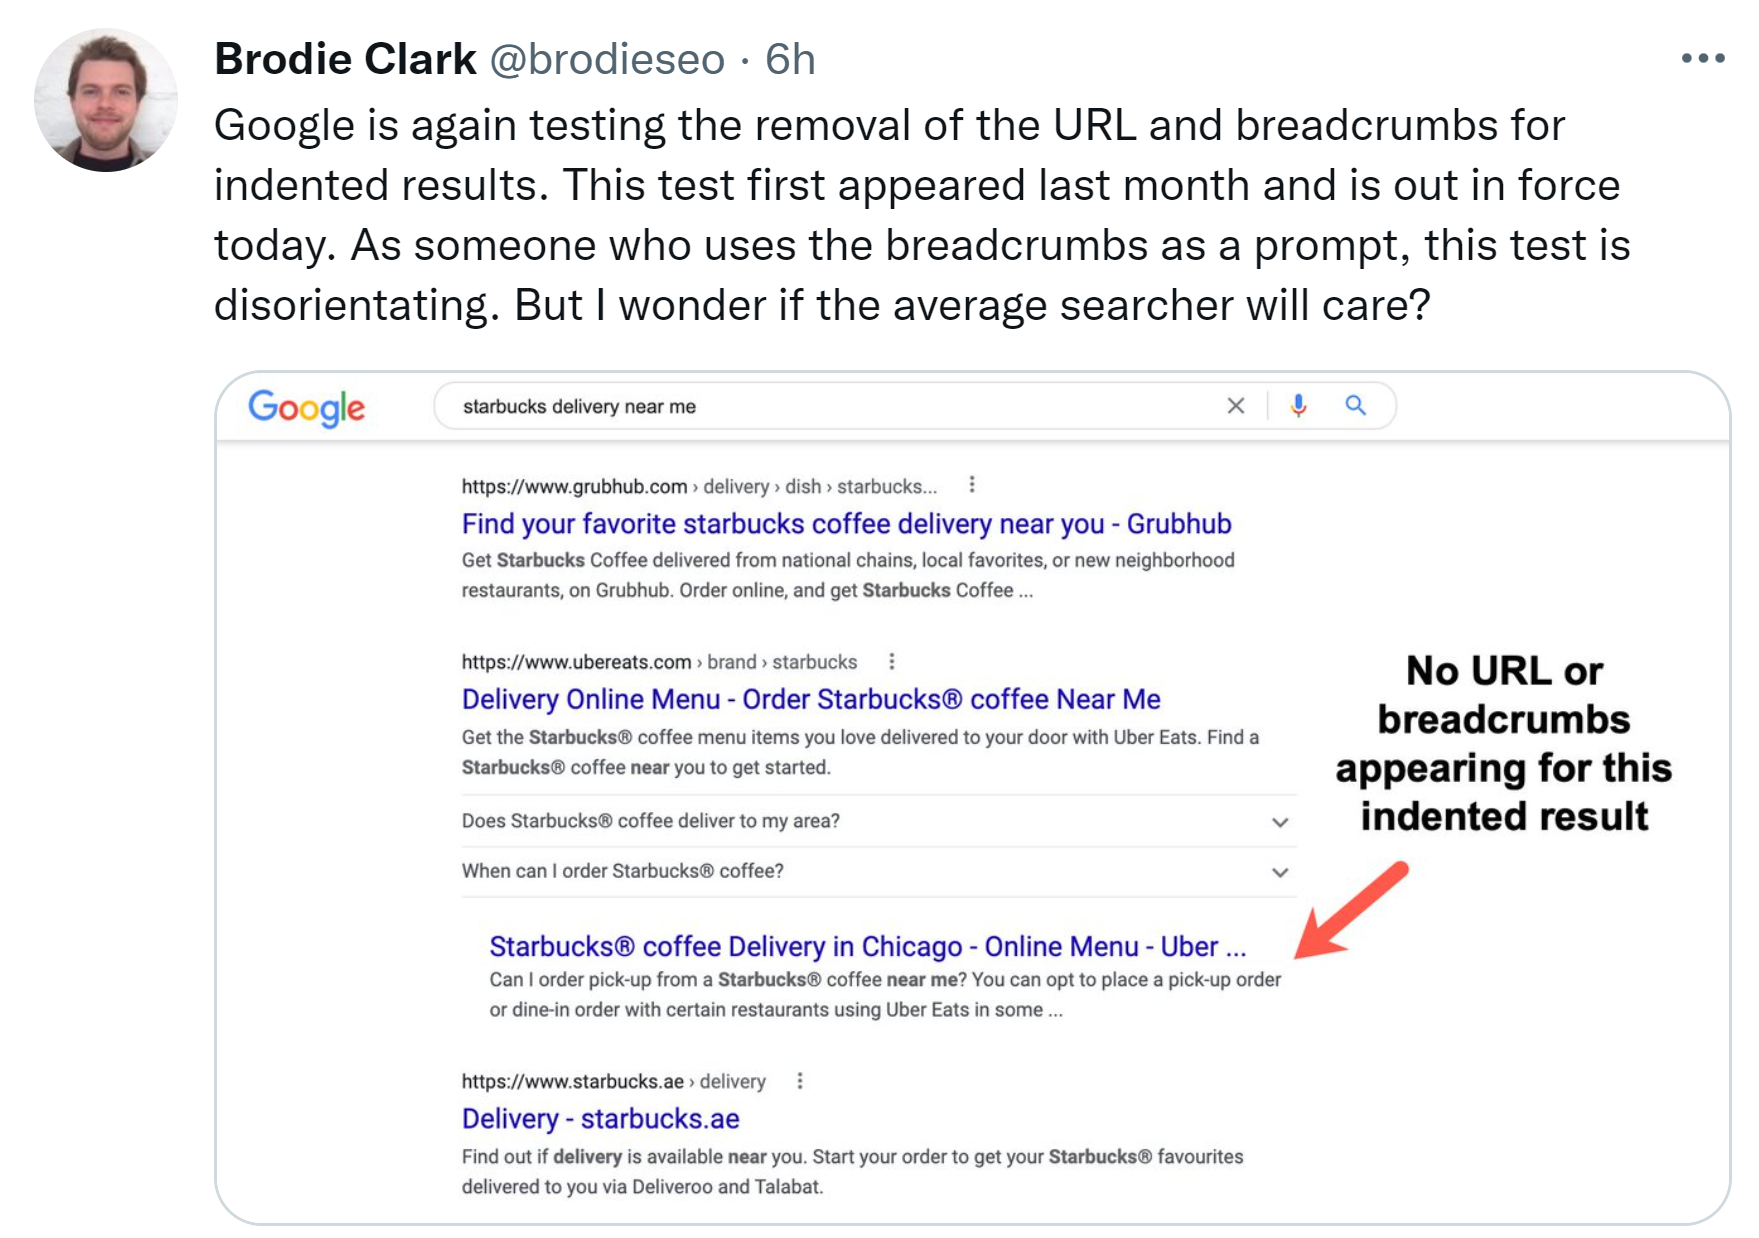 Google testet wieder Indented Search Results ohne URL und Breadcrumb